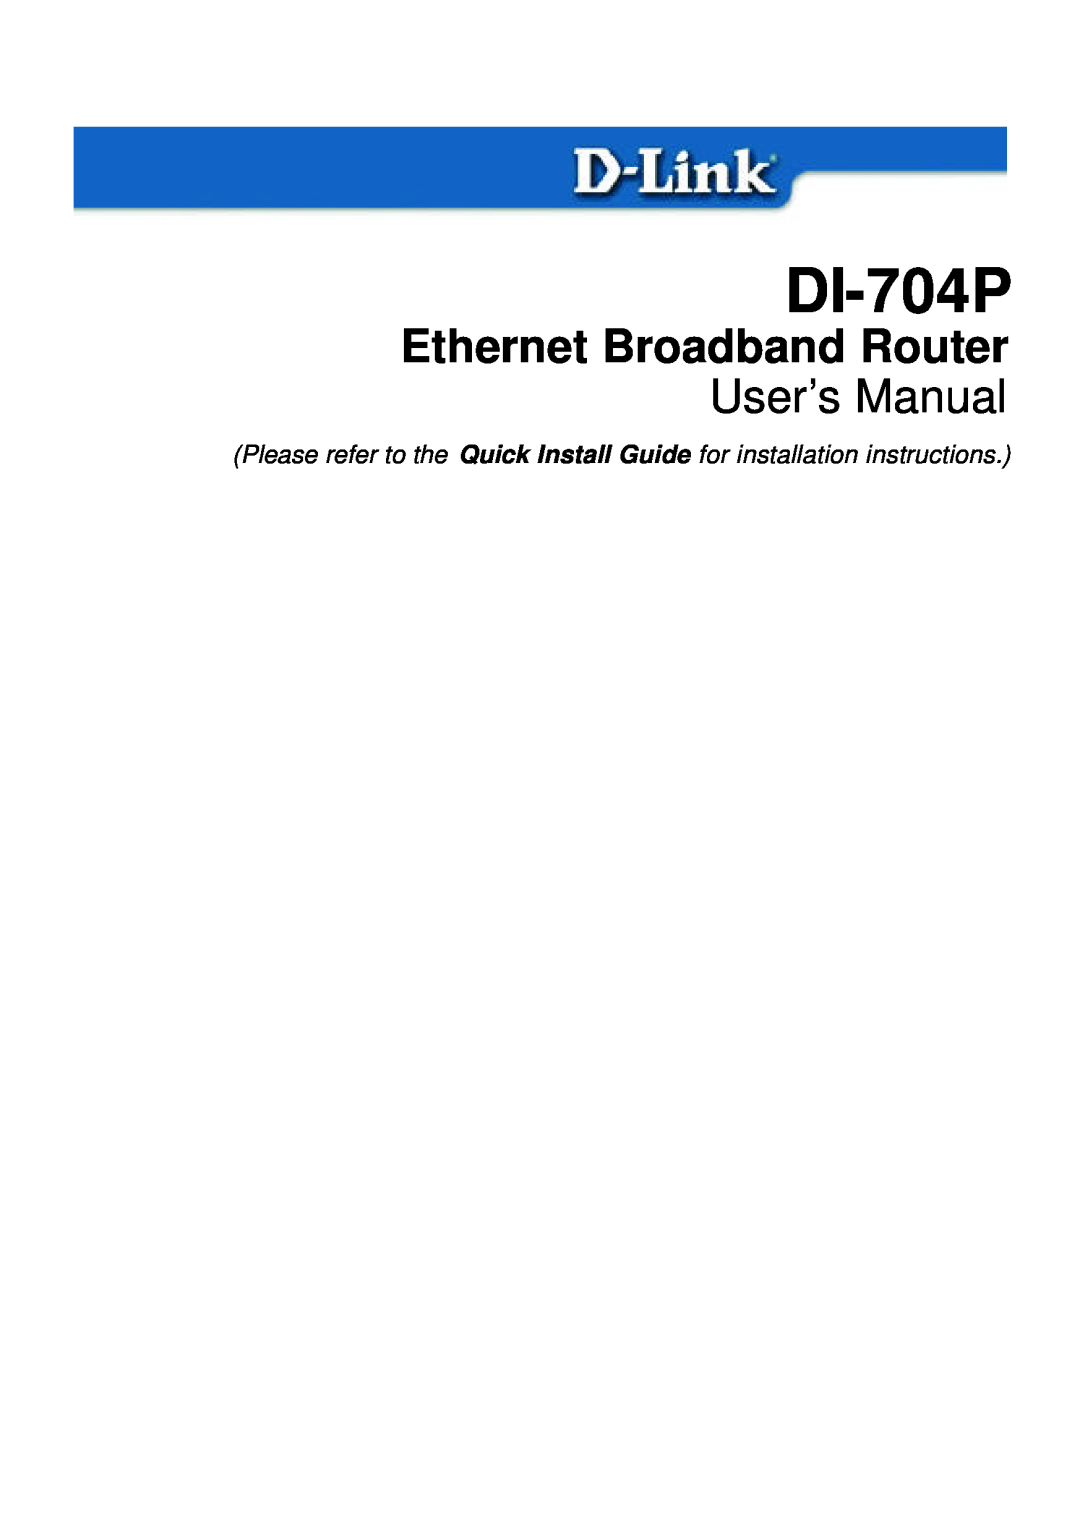 D-Link DI-704P user manual Ethernet Broadband Router, User’s Manual 